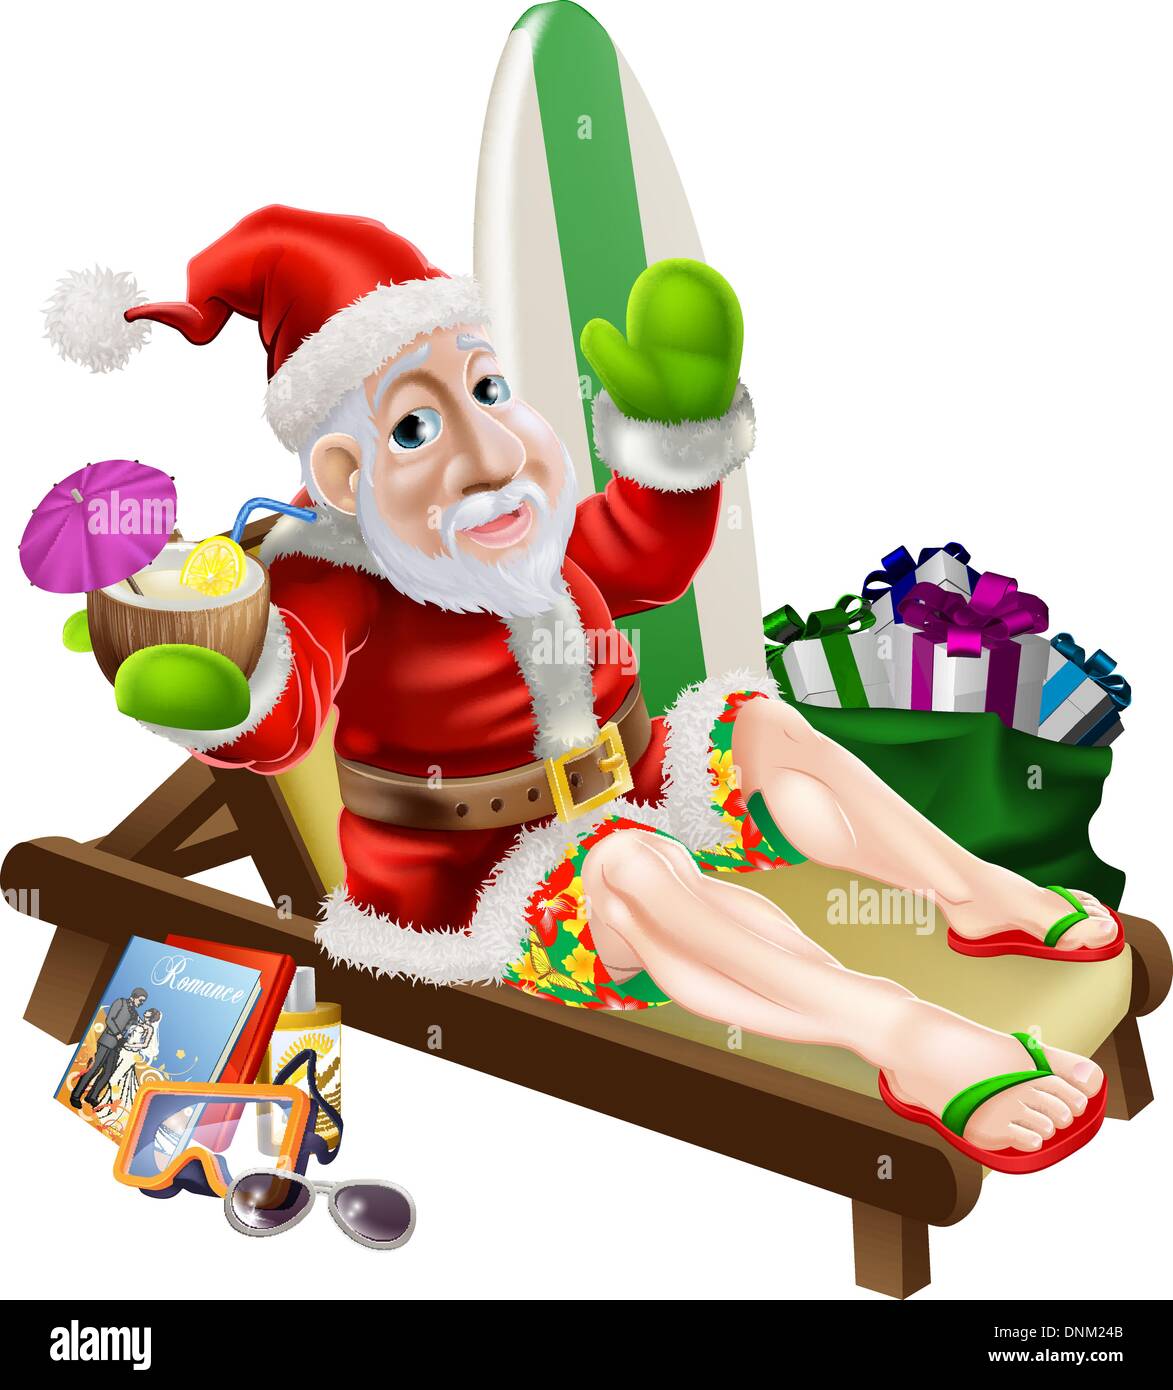 Weihnachten Weihnachtsmann mit seinen Urlaub Artikel, Geschenke und Surf Board entspannen, am Strand oder am Pool in Boardshorts Stock Vektor